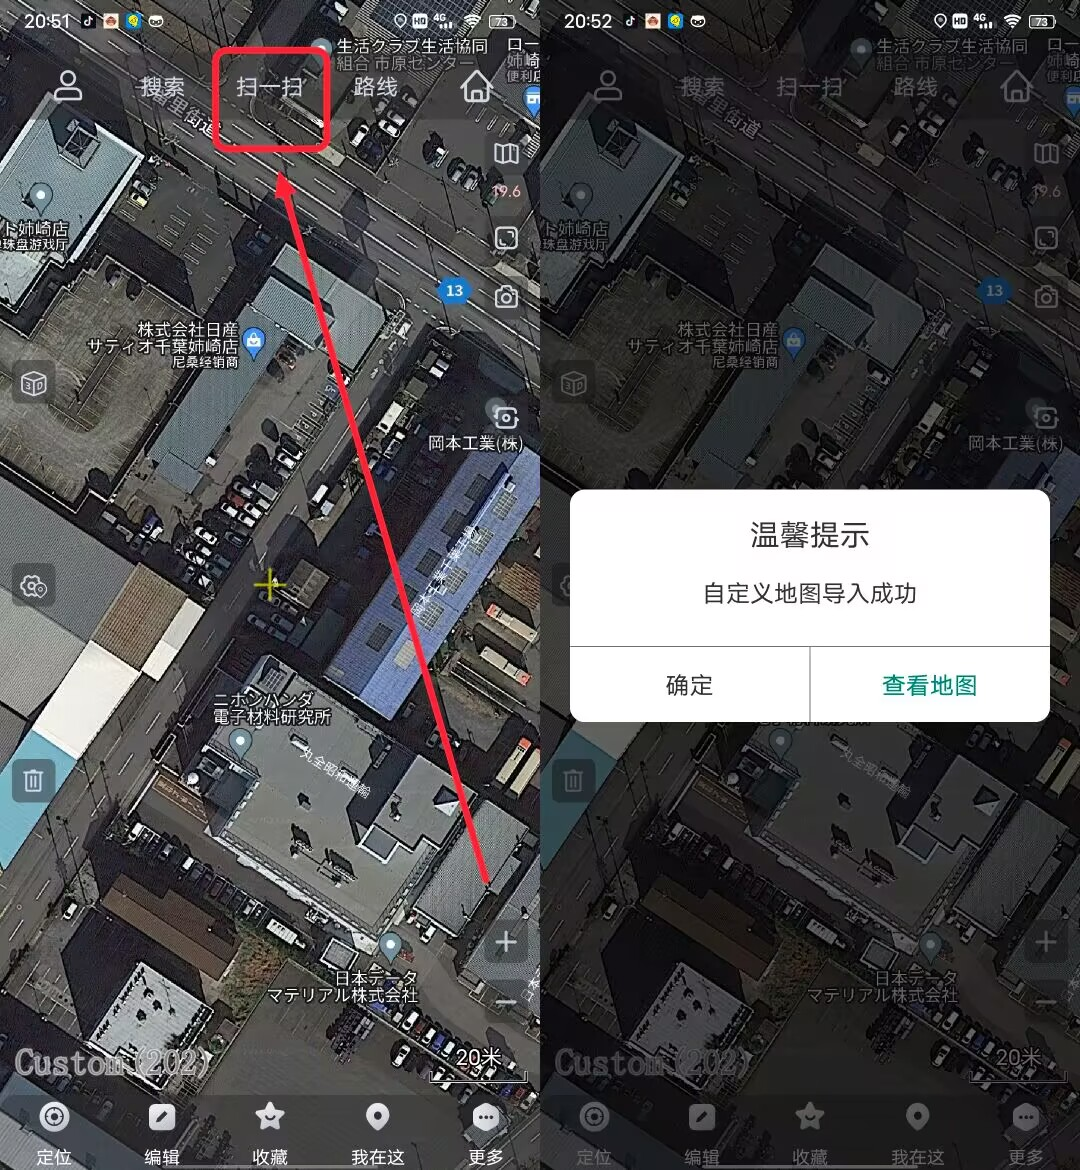 奥维互动地图App，​能看清你家屋顶的“谷歌”地图，附图源！-科技匣子